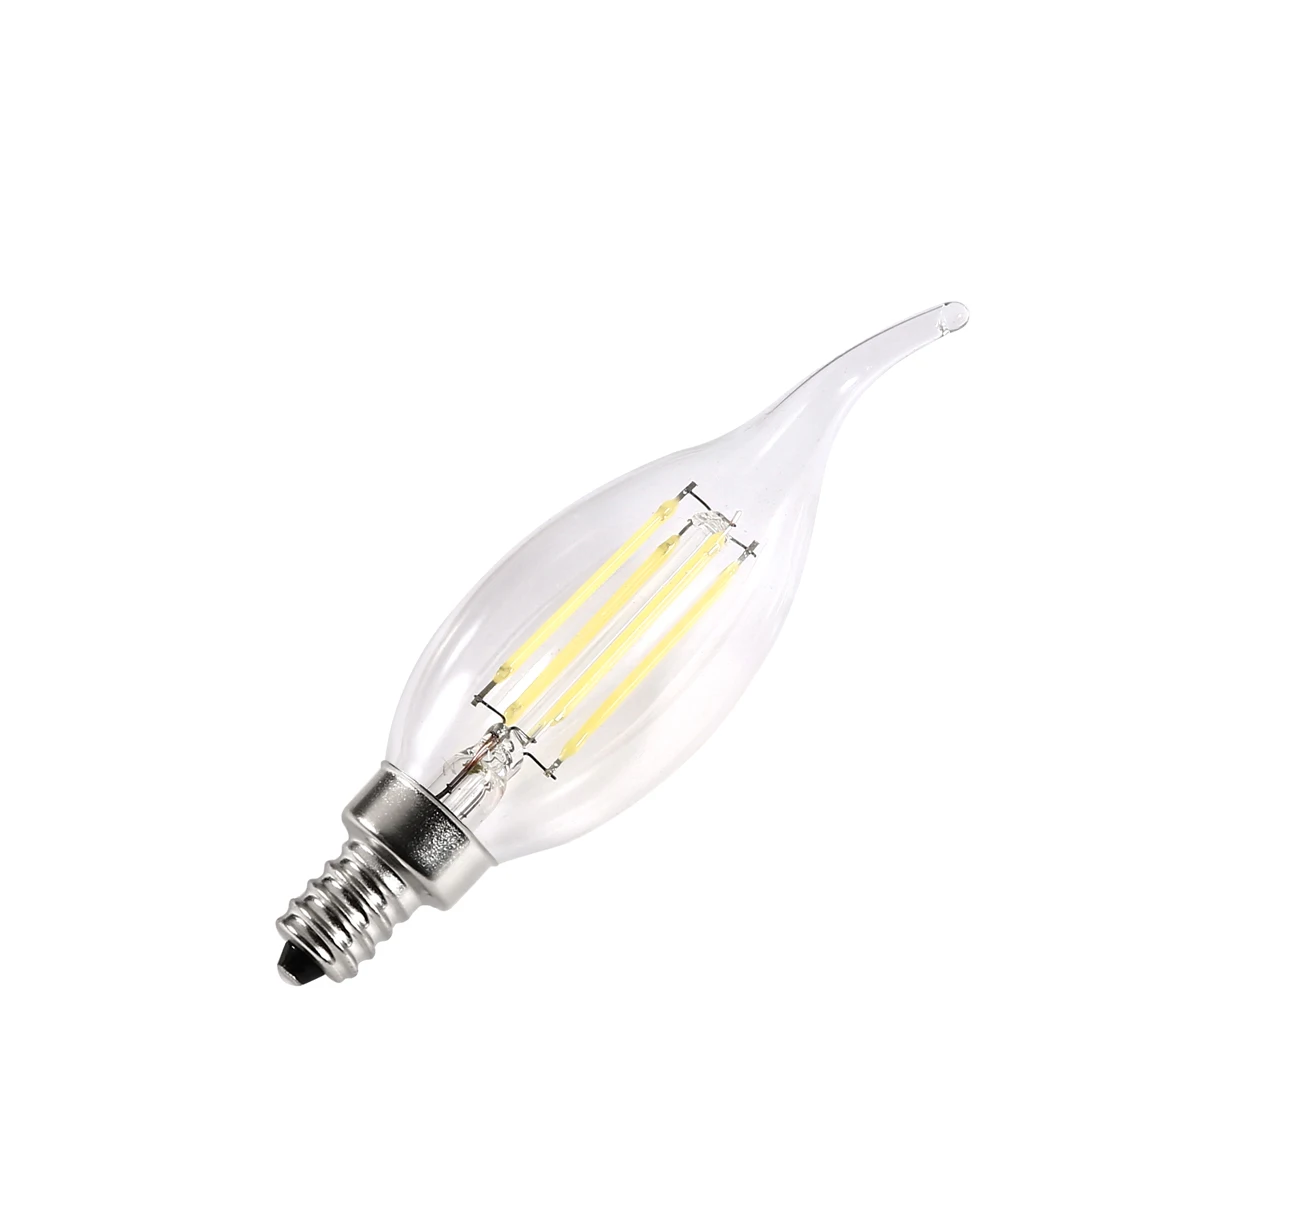 2020 new type led bulb 2w 4w 6w 7w 8w C35 G45 A60 led lamp E14/E27/E12 lamp head